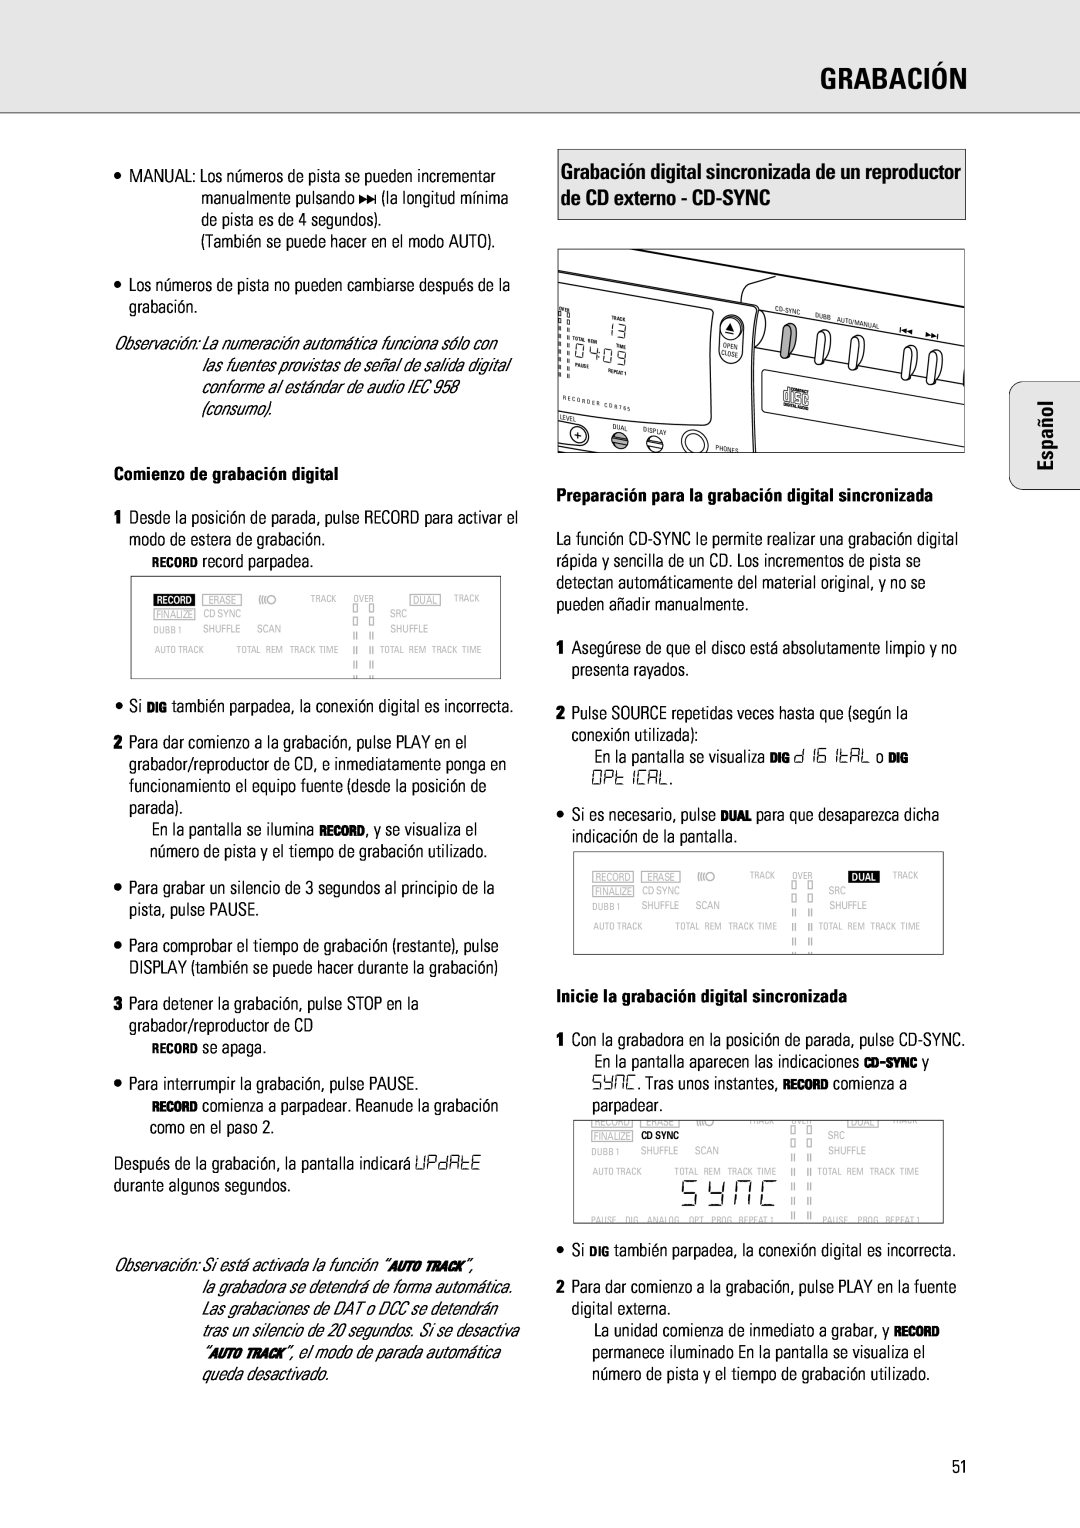 Philips 765 manual Comienzo de grabación digital, Inicie la grabación digital sincronizada, Grabación, Español 